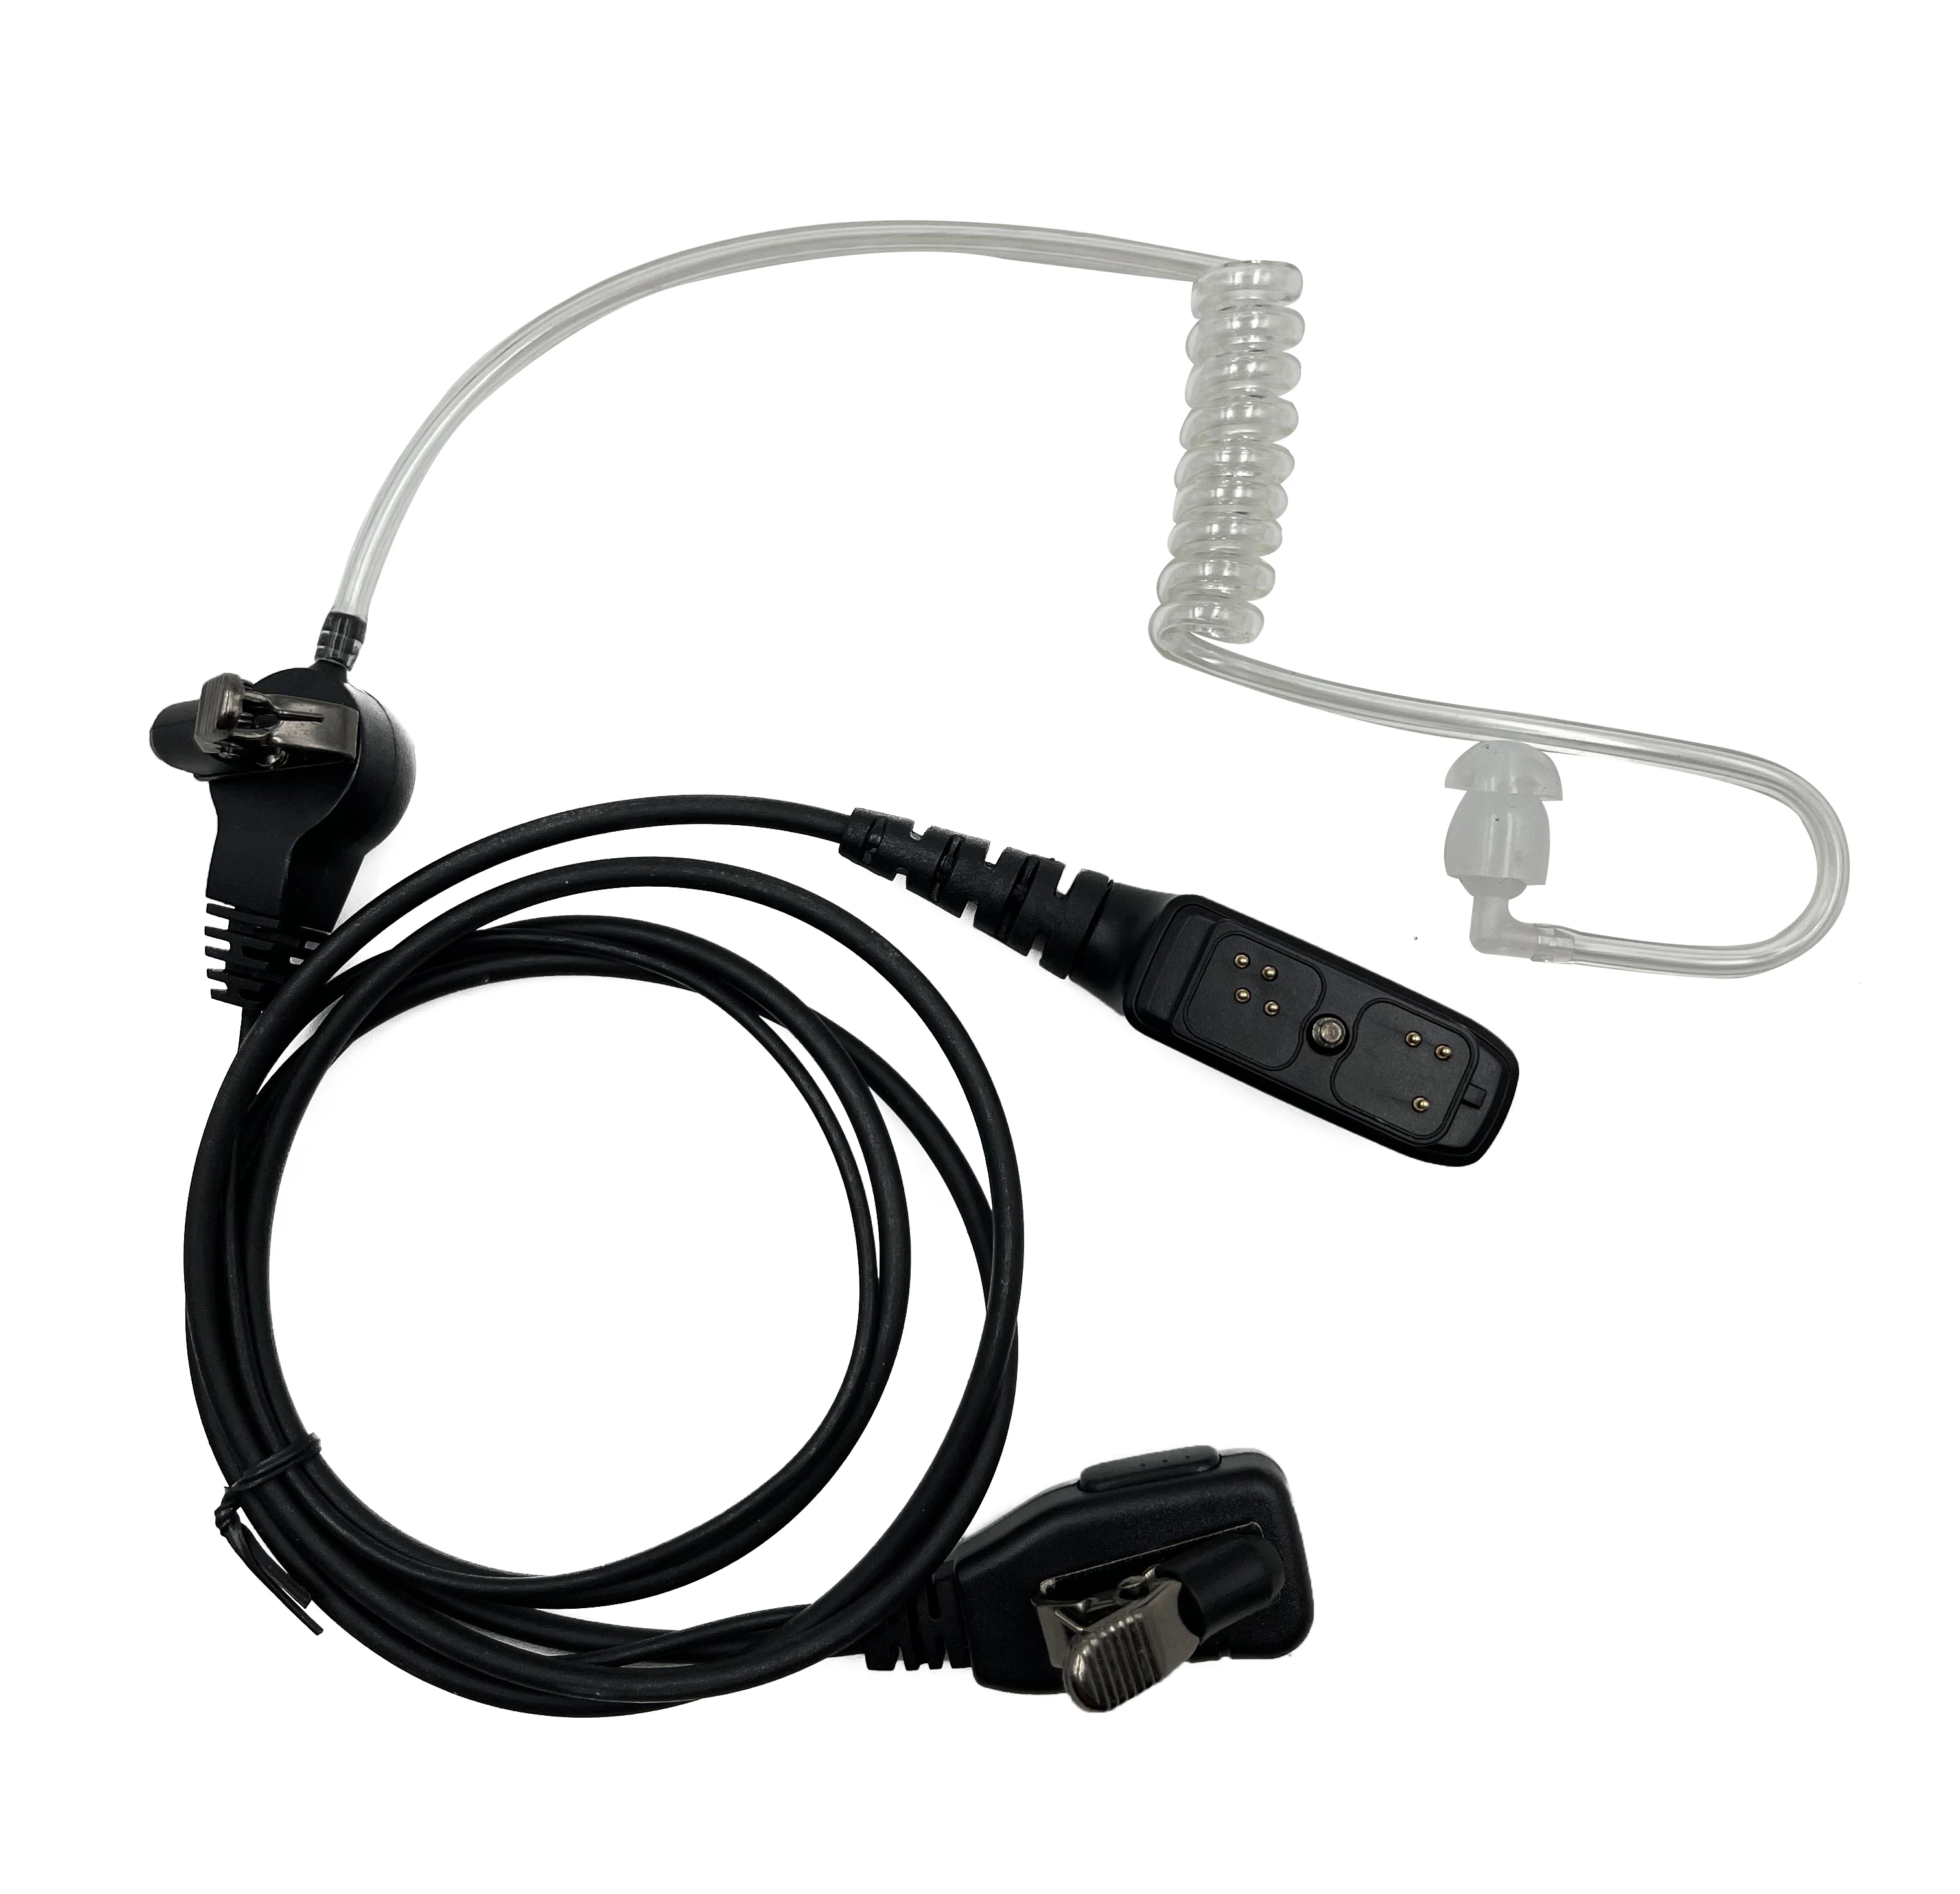 

Walkie Talkie Headset Earpiece Mic for Hytera HYT PD700 PD700G PD702G PD705G PD752 PD780 PD782 PD785 PD785G PT580H Two Way Radio